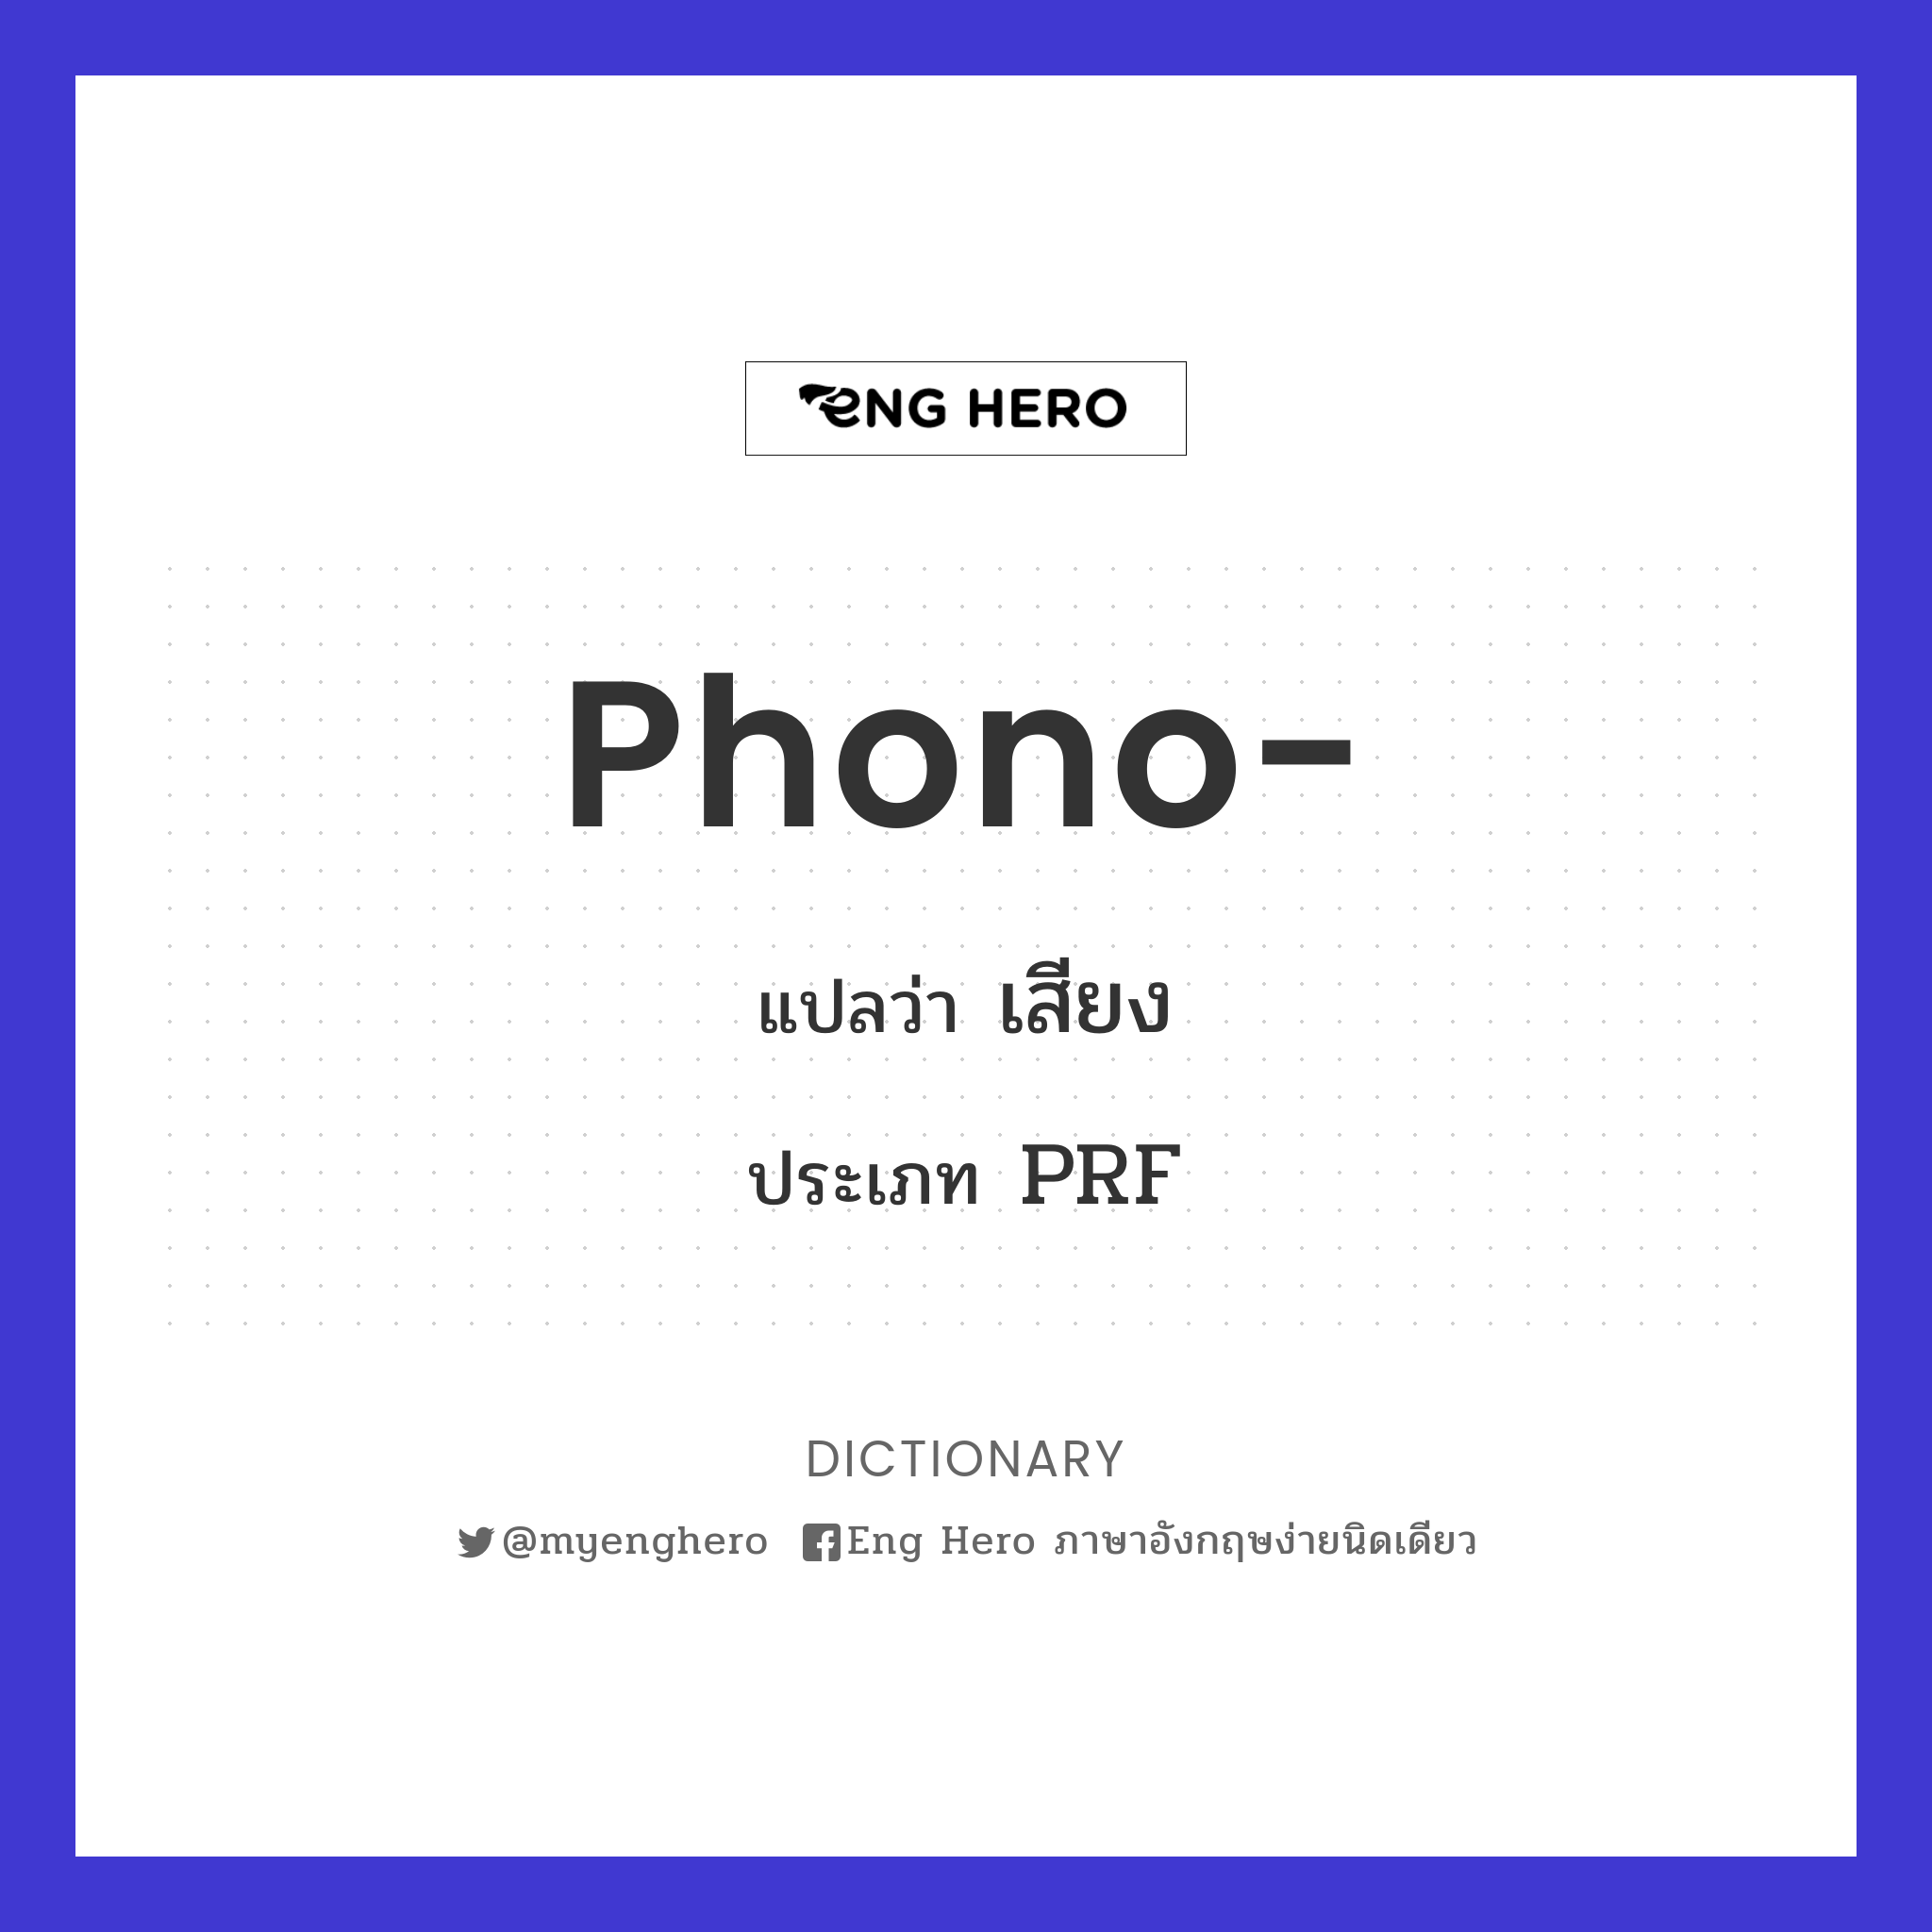 phono-